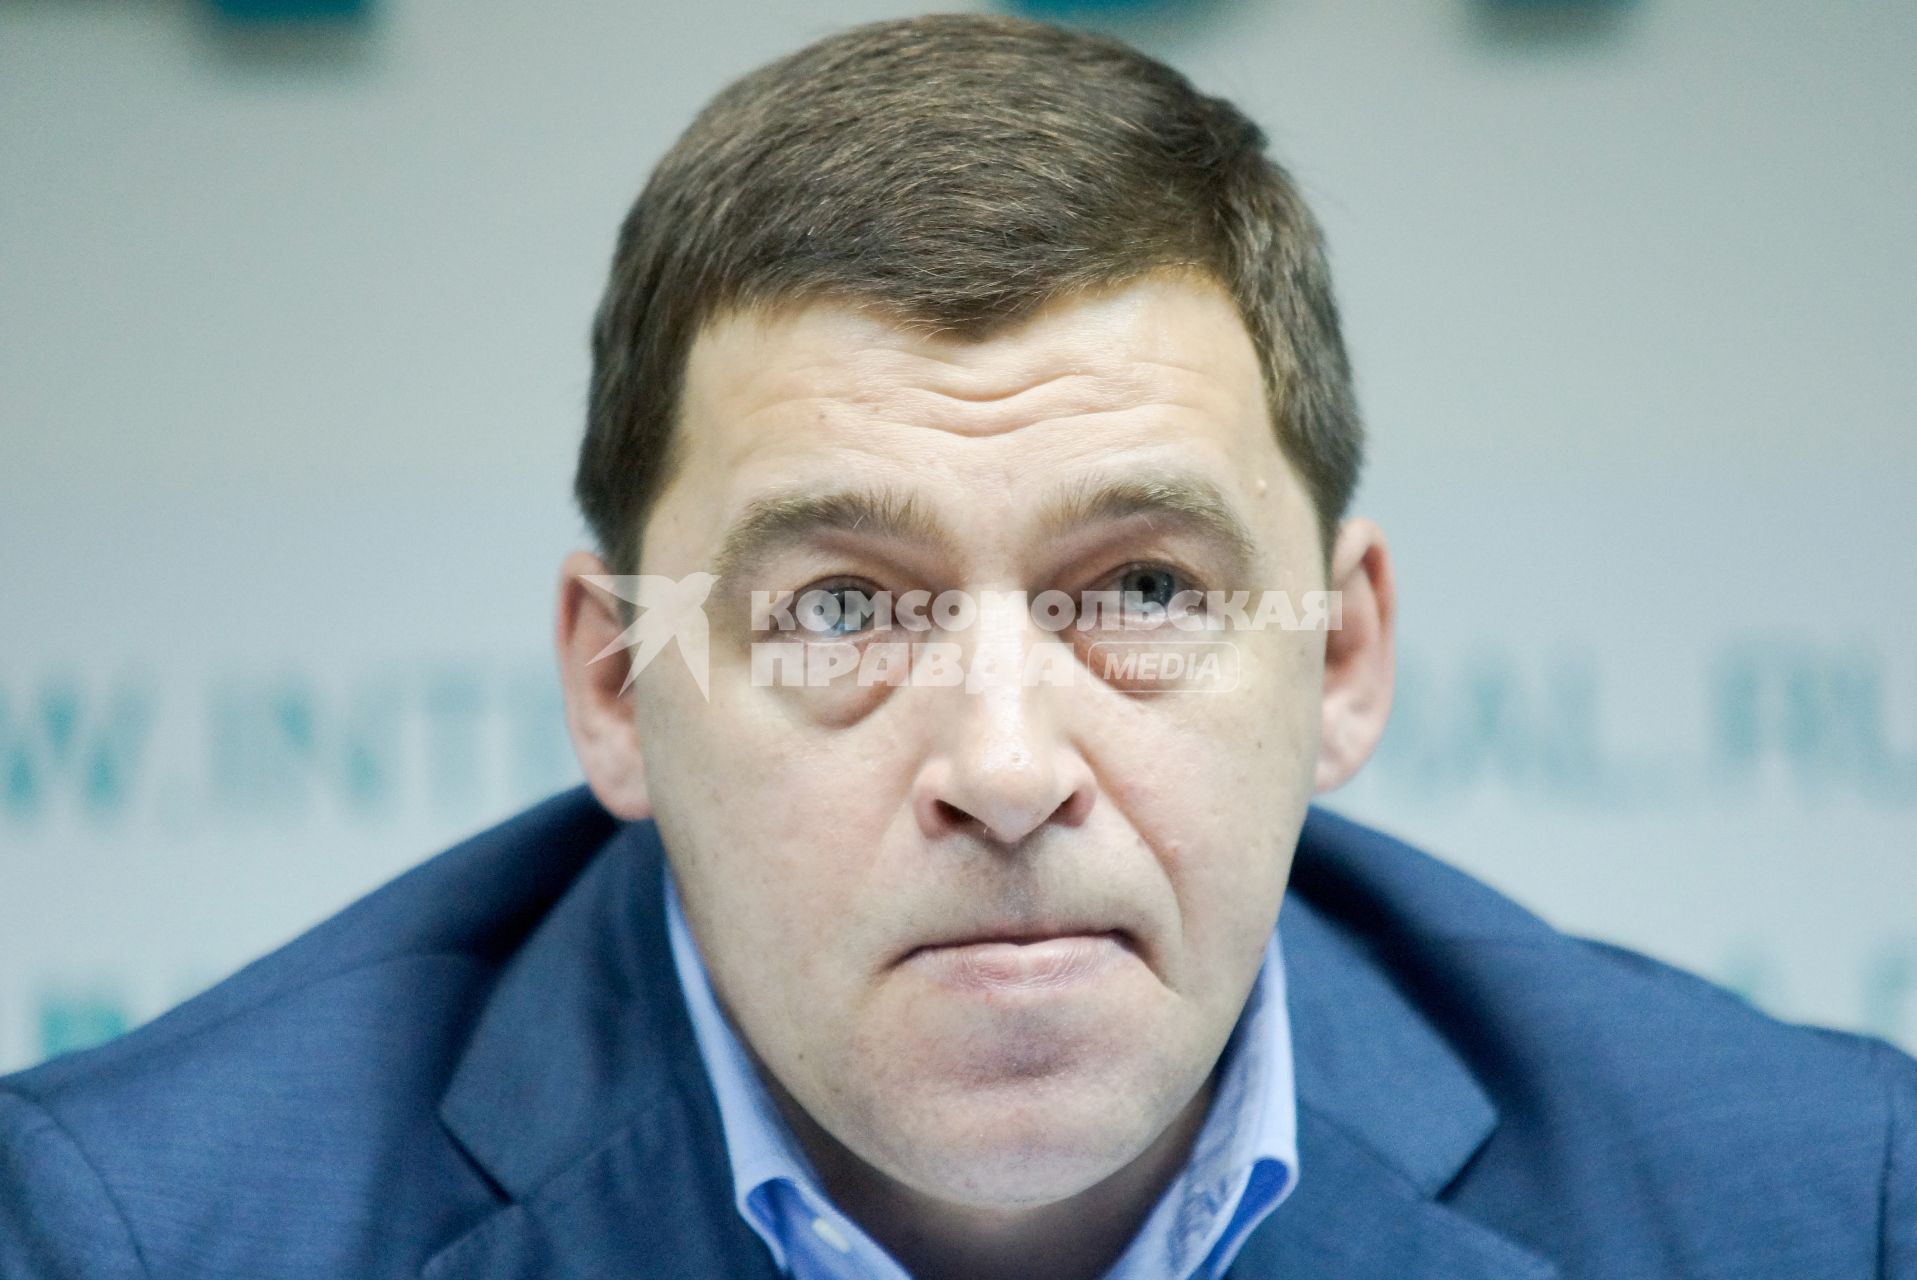 Губернатор Свердловской области Евгений Куйвашев на пресс-конфеернции.